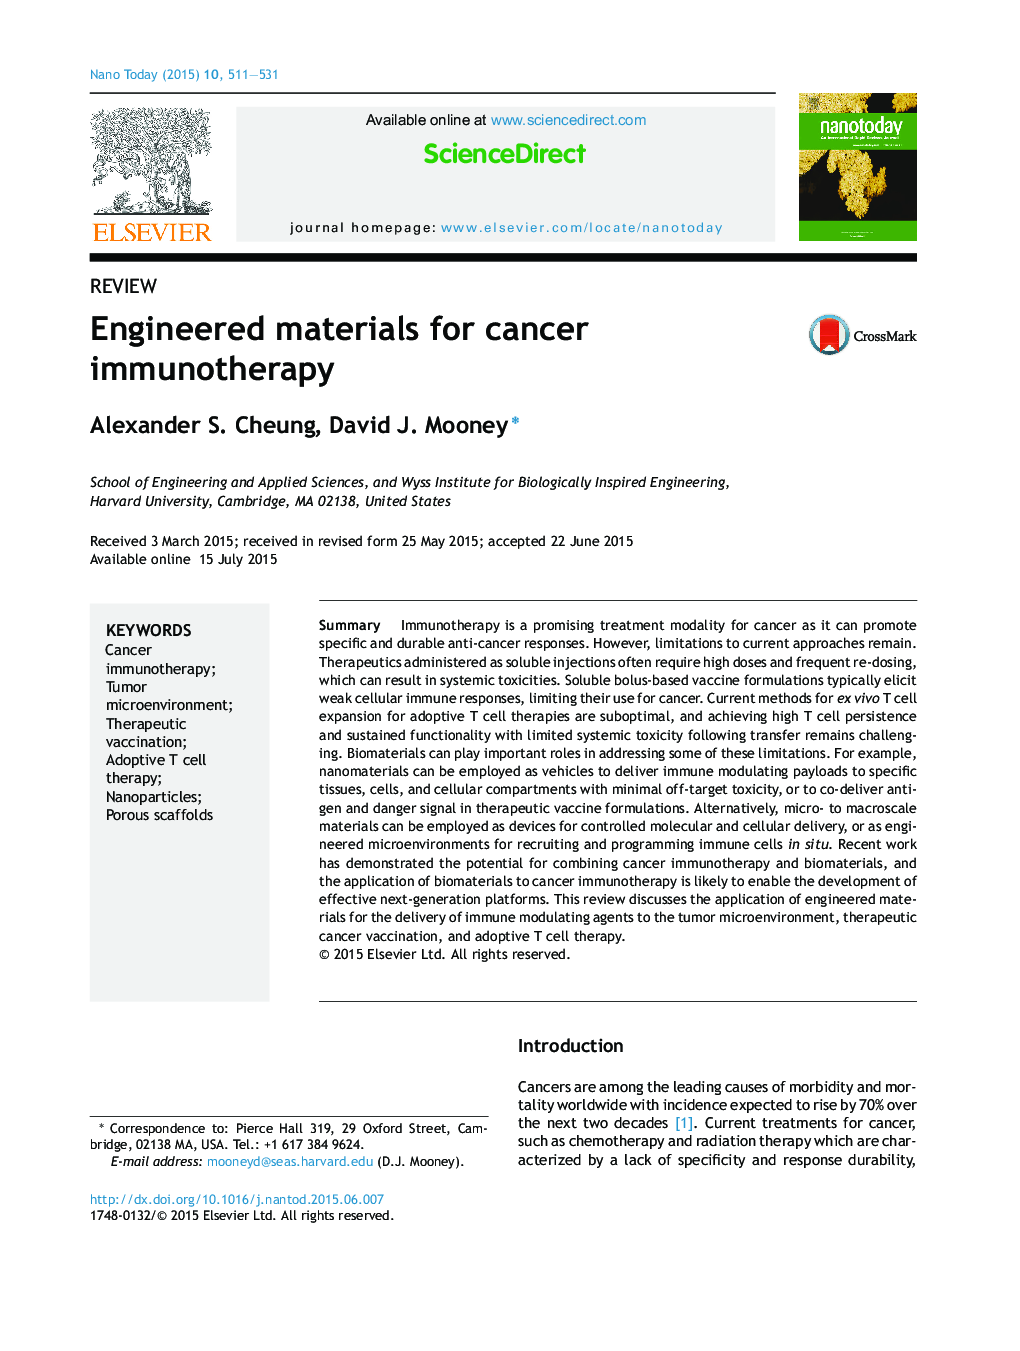 مواد مهندسی برای ایمونوتراپی سرطان 